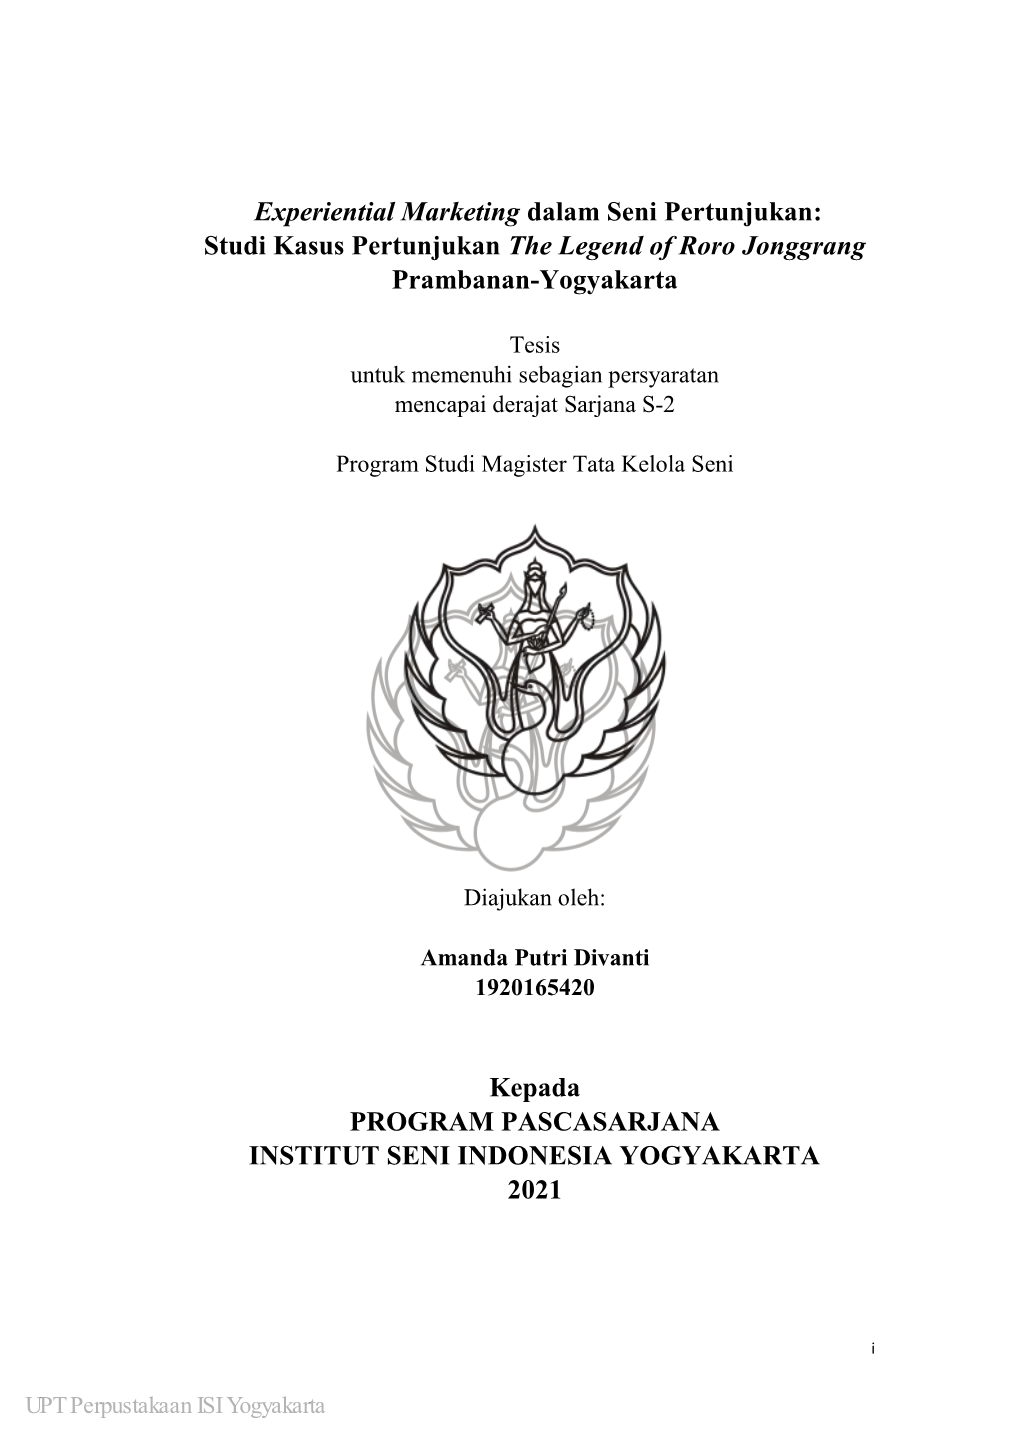 Studi Kasus Pertunjukan the Legend of Roro Jonggrang Prambanan-Yogyakarta